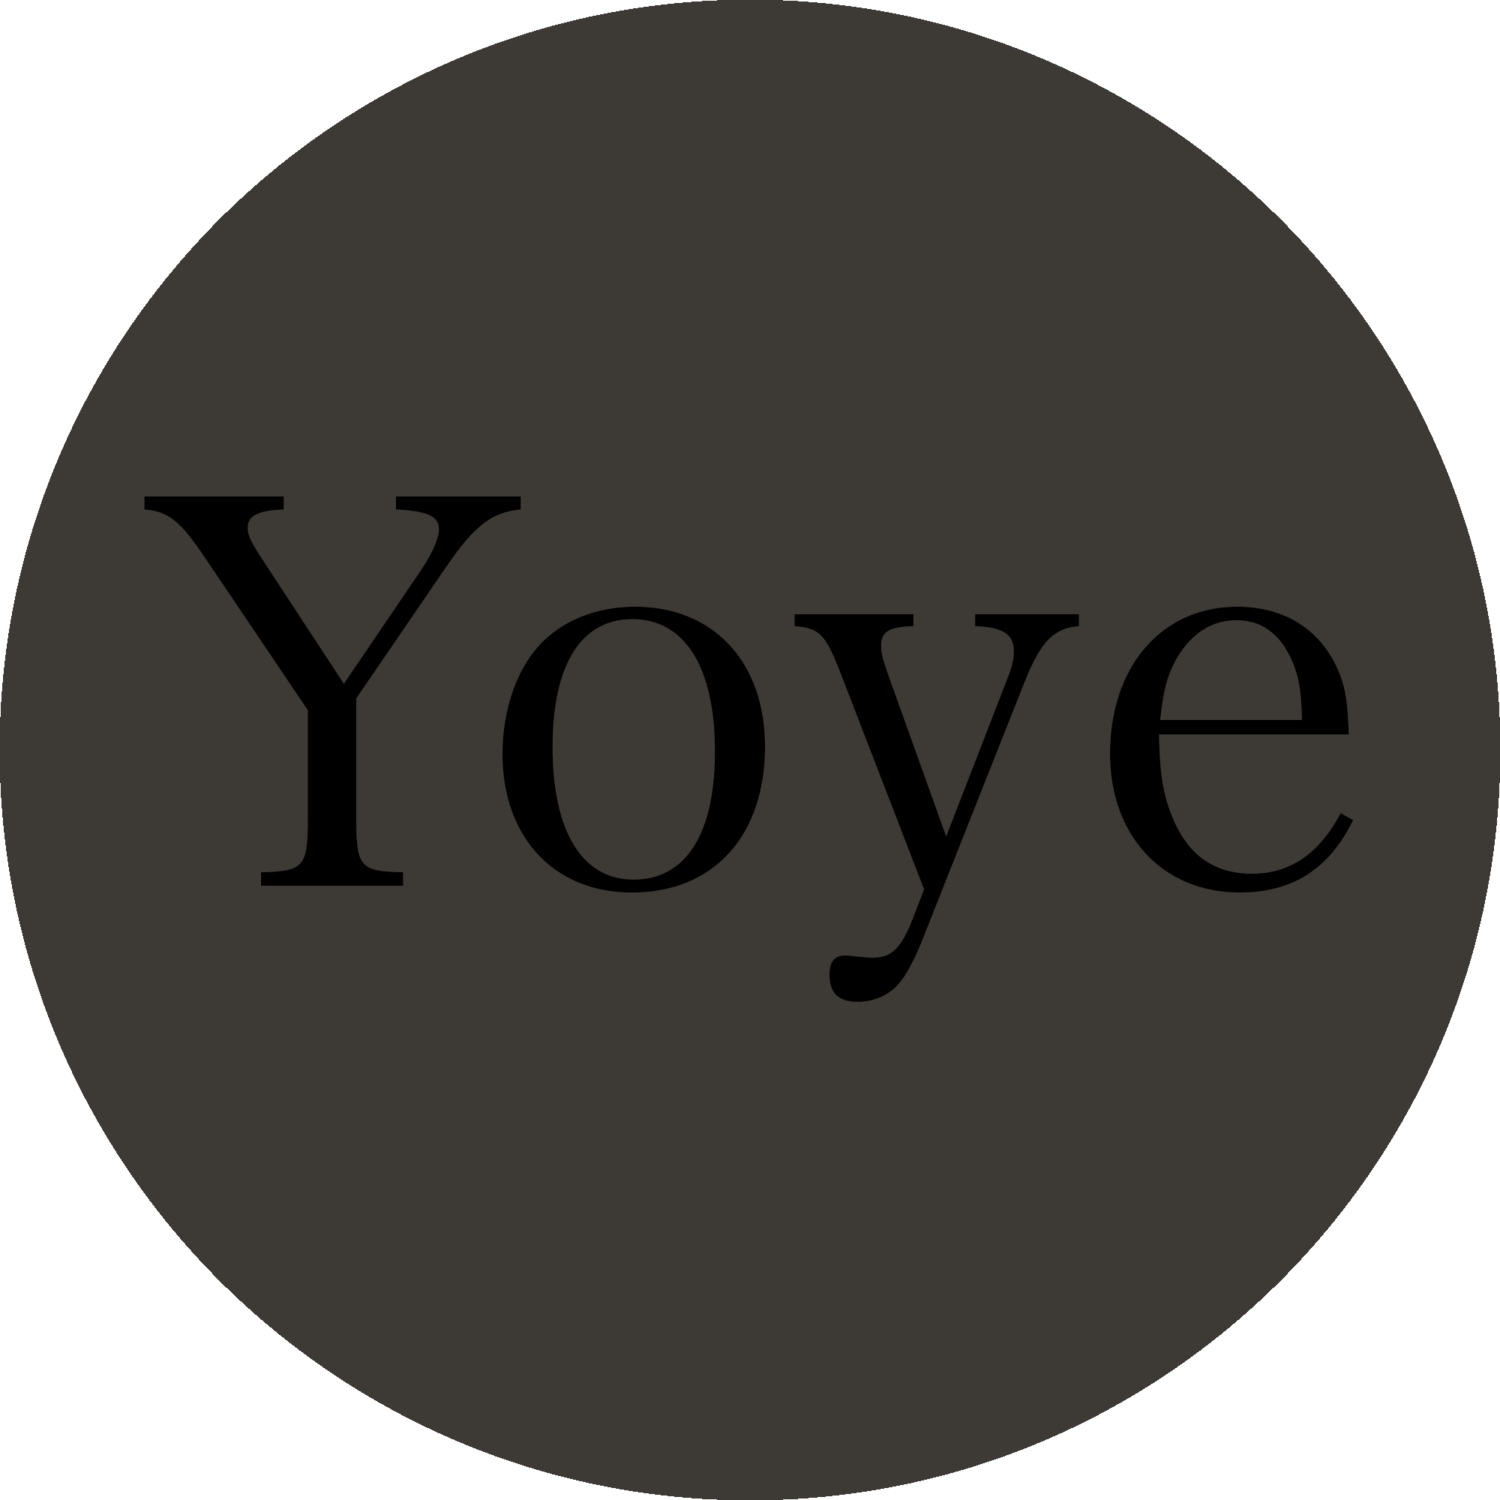 Yoye